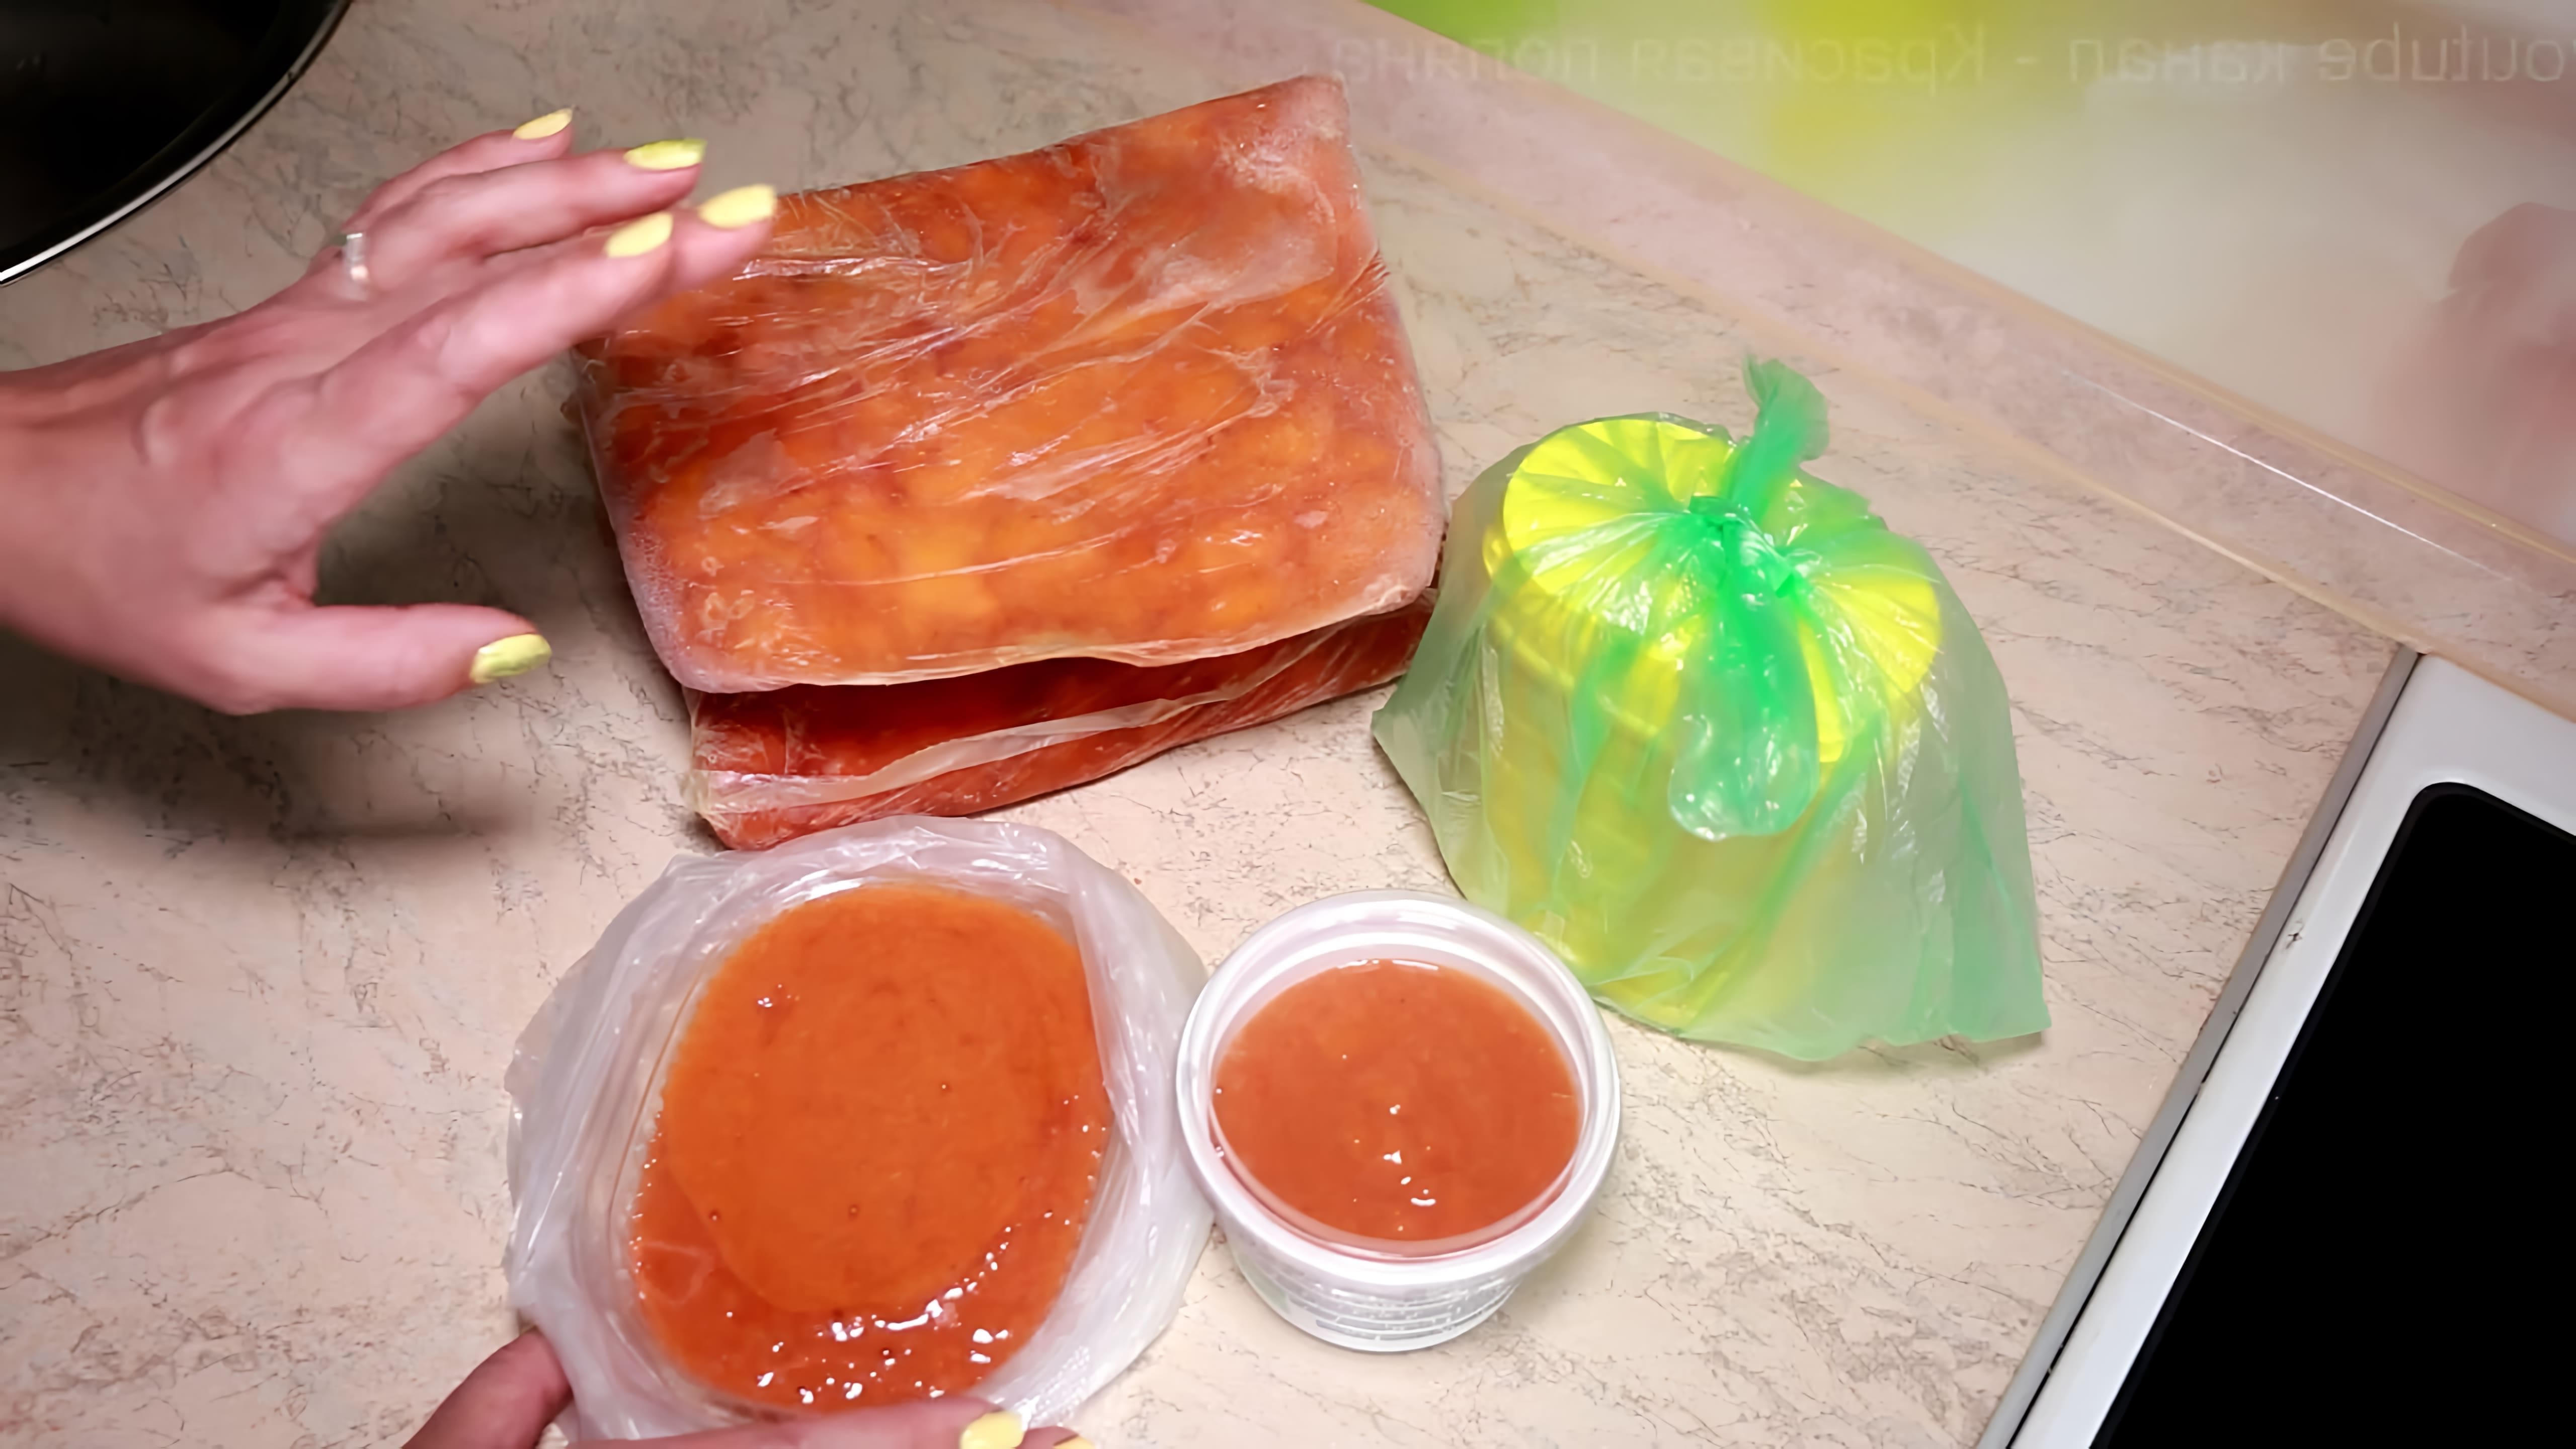 В этом видео демонстрируются два способа заморозки абрикосов на зиму